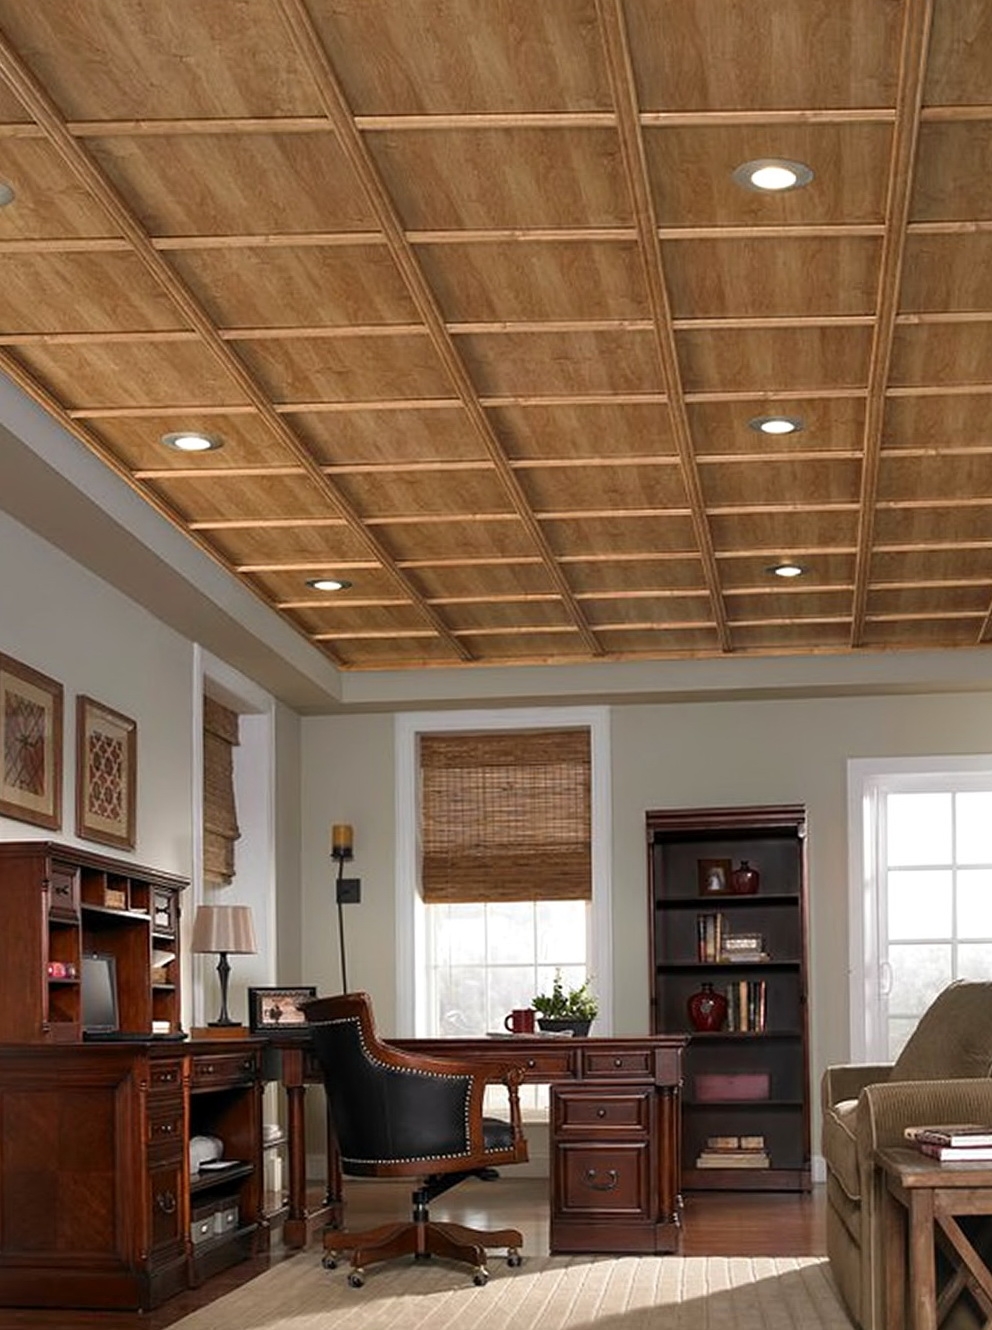 Ceiling Tiles Wood Grain Ceiling Tiles Wood Grain wood grain ceiling tiles home design ideas 992 X 1330